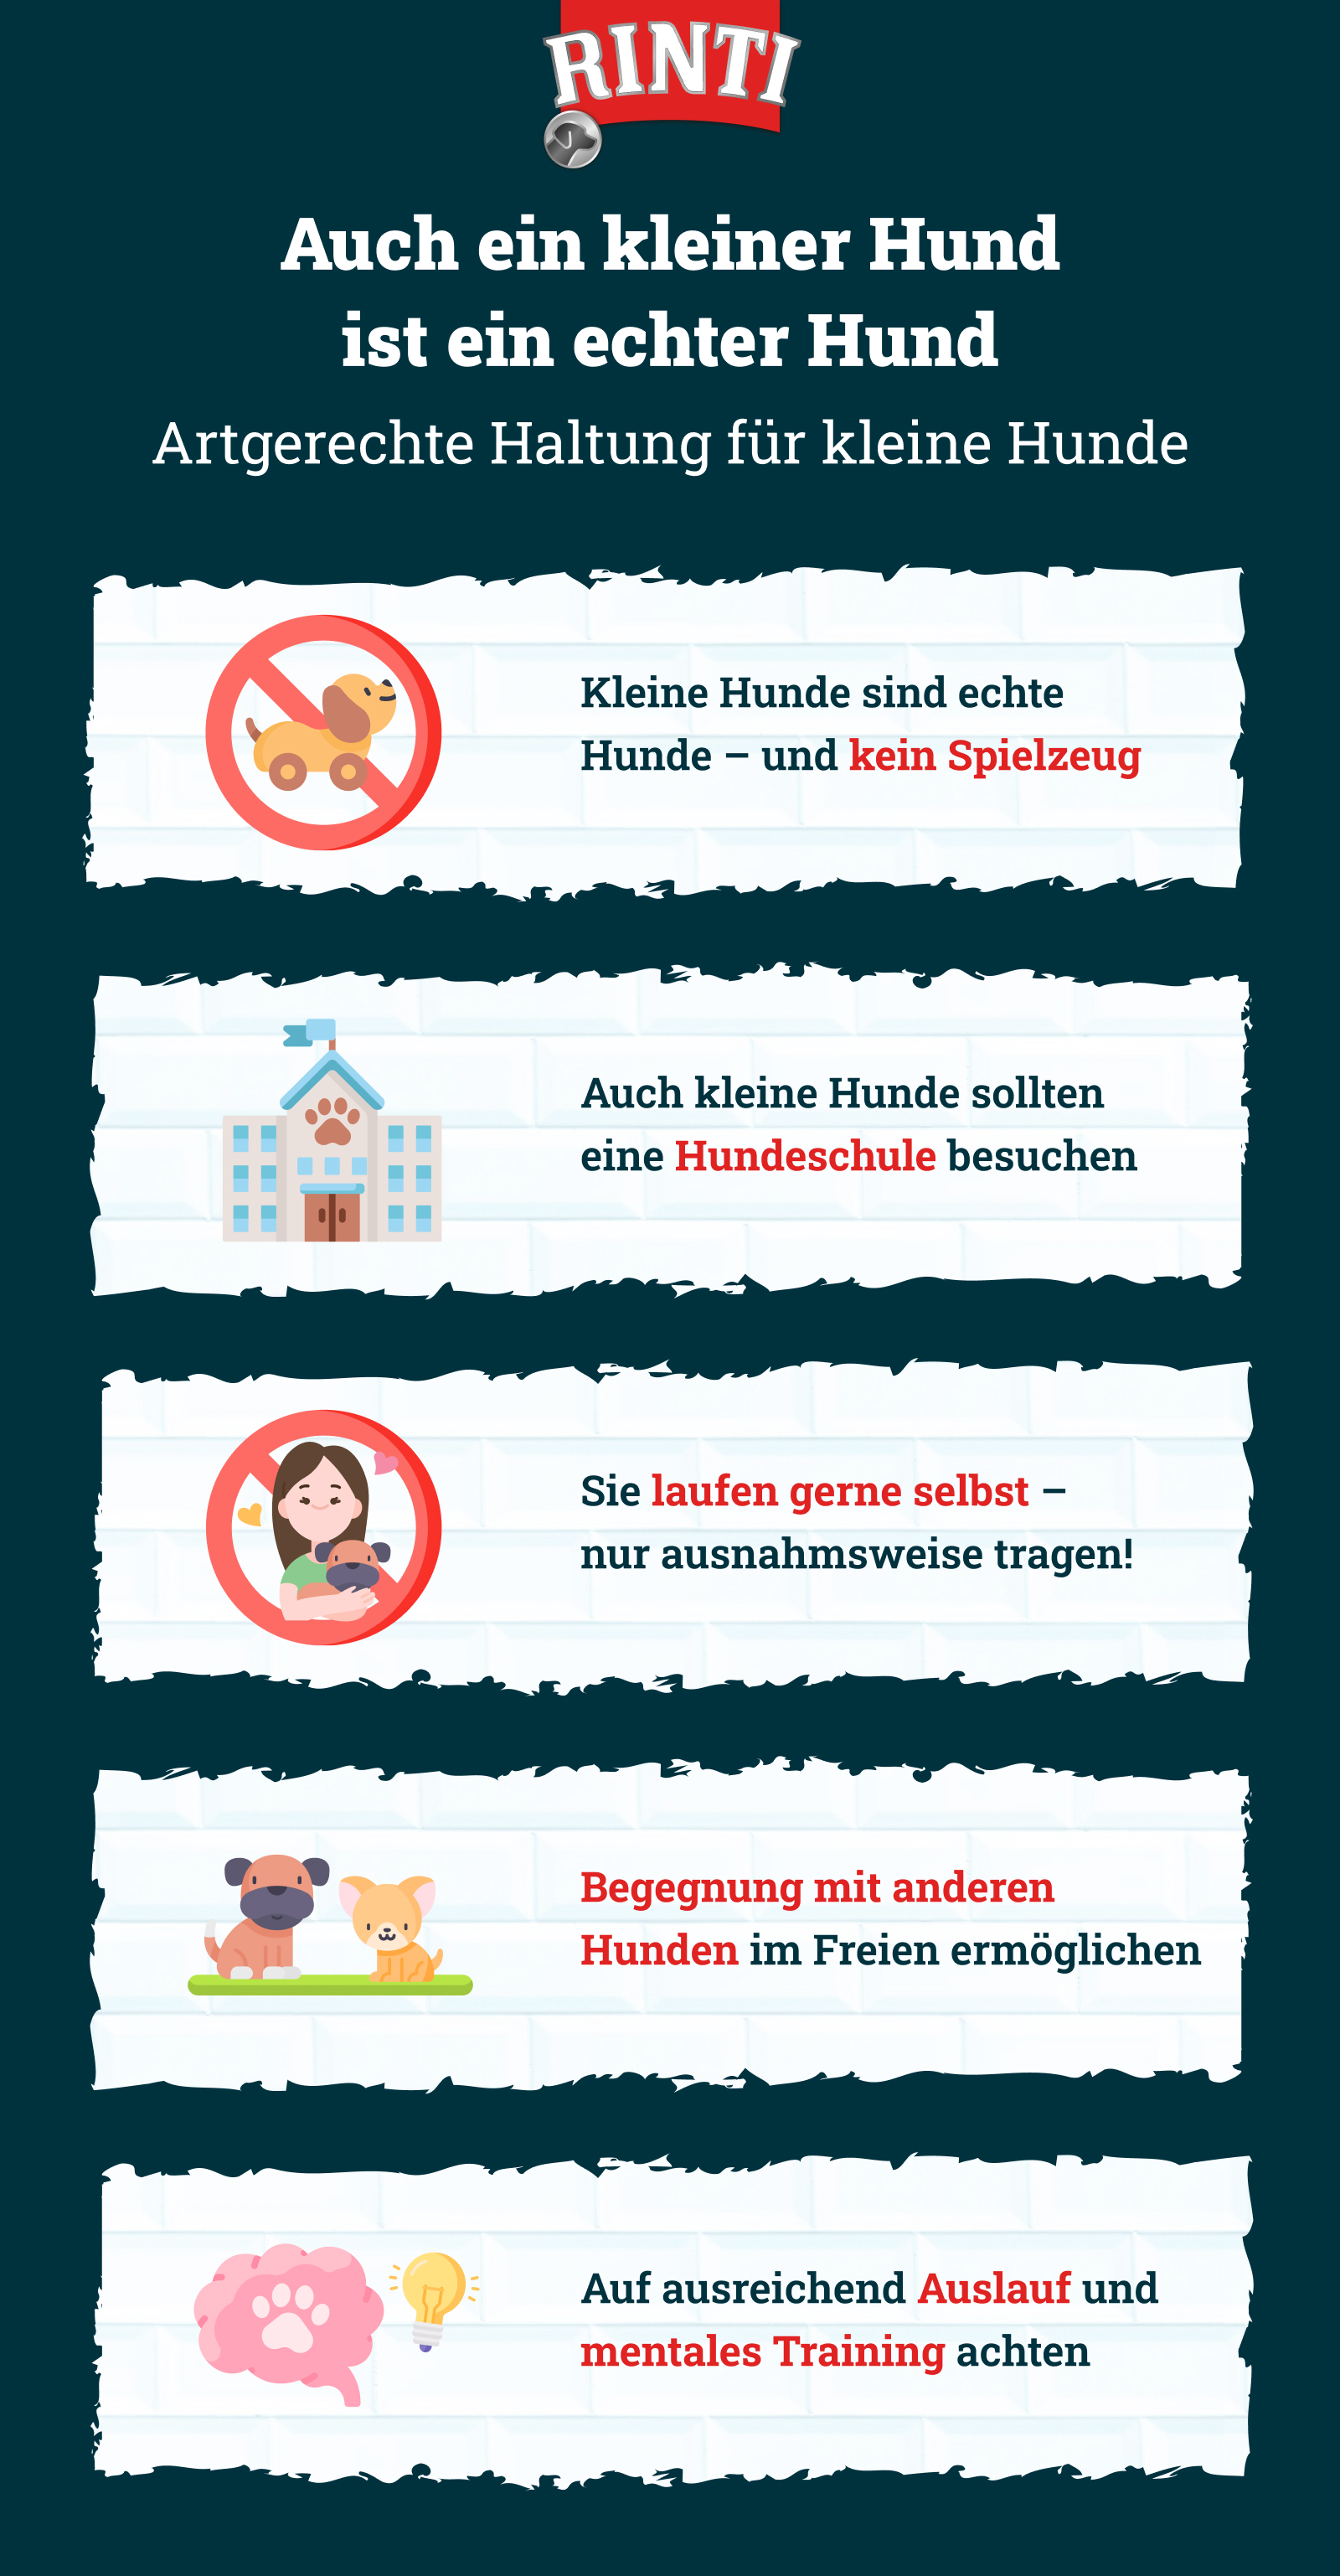 Infografik zur Erziehung kleiner Hunde – das ist wichtig